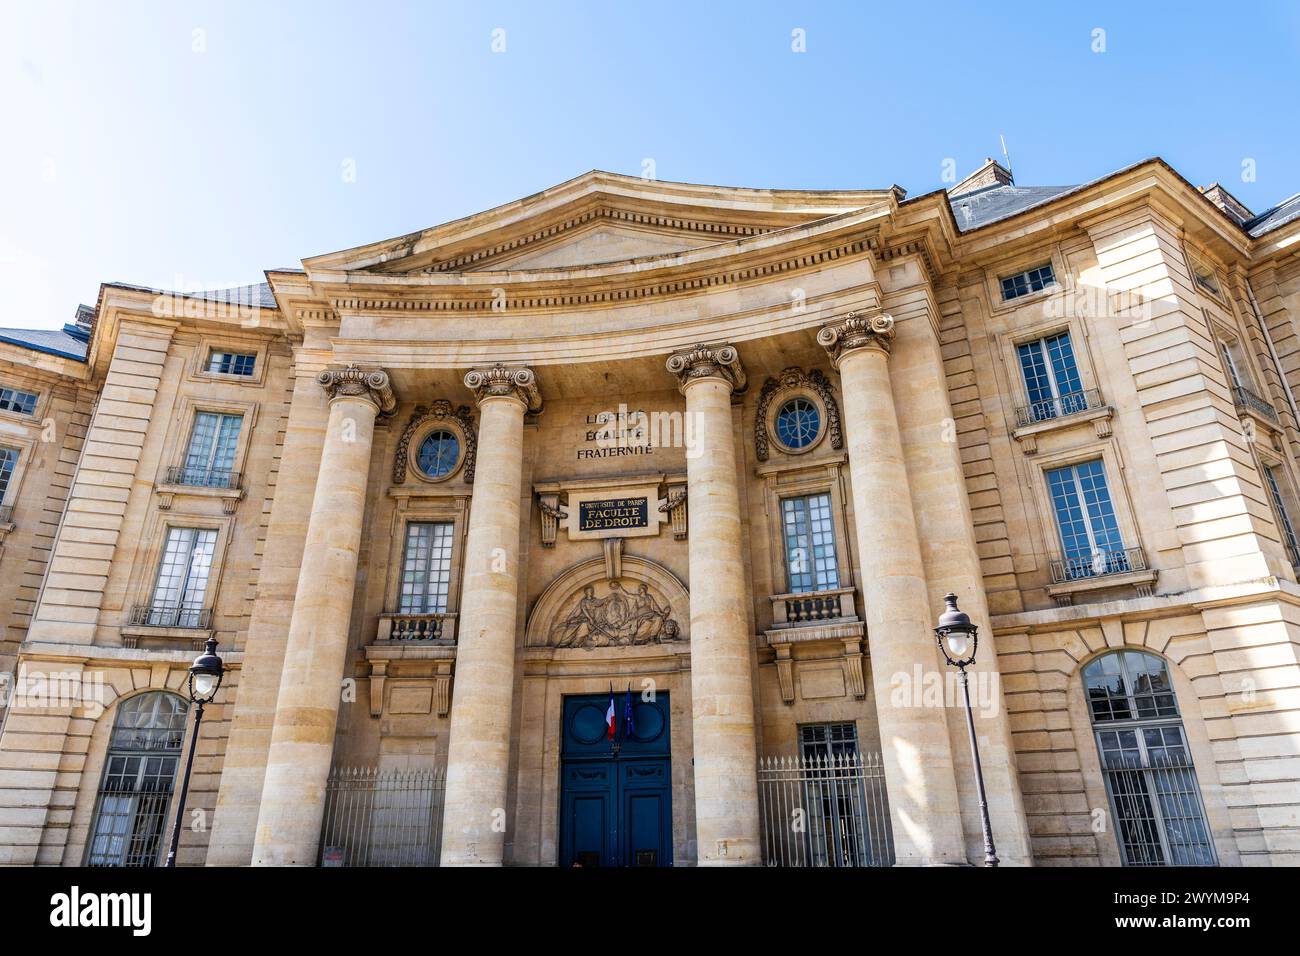 Fassade von Paris 1 Universität Panthéon-Sorbonne, öffentliche Bibliothek und Universitätsbibliothek am Place du Panthéon, 5. Arrondissement, Paris, Frankreich Stockfoto